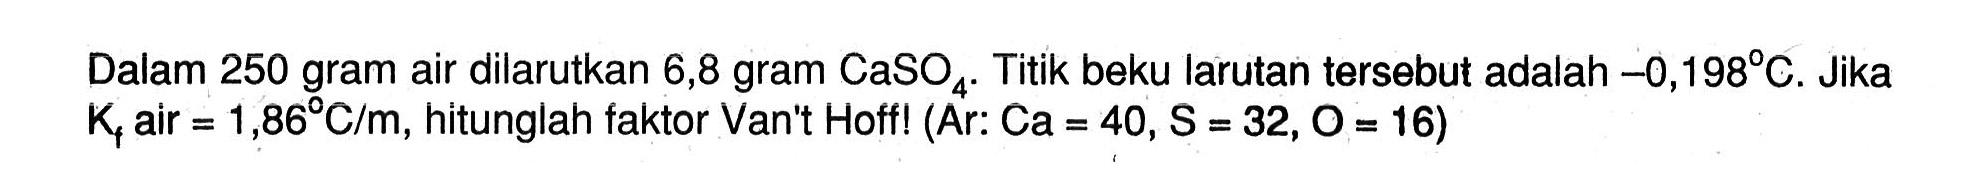 Dalam 250 gram air dilarutkan 6,8 gram CaSO4. Titik beku larutan tersebut adalah -0,1989 C. Jika Kf air = 1,86 C/m, hitunglah faktor Van"t Hoff! (Ar: Ca = 40, S = 32,O = 16)